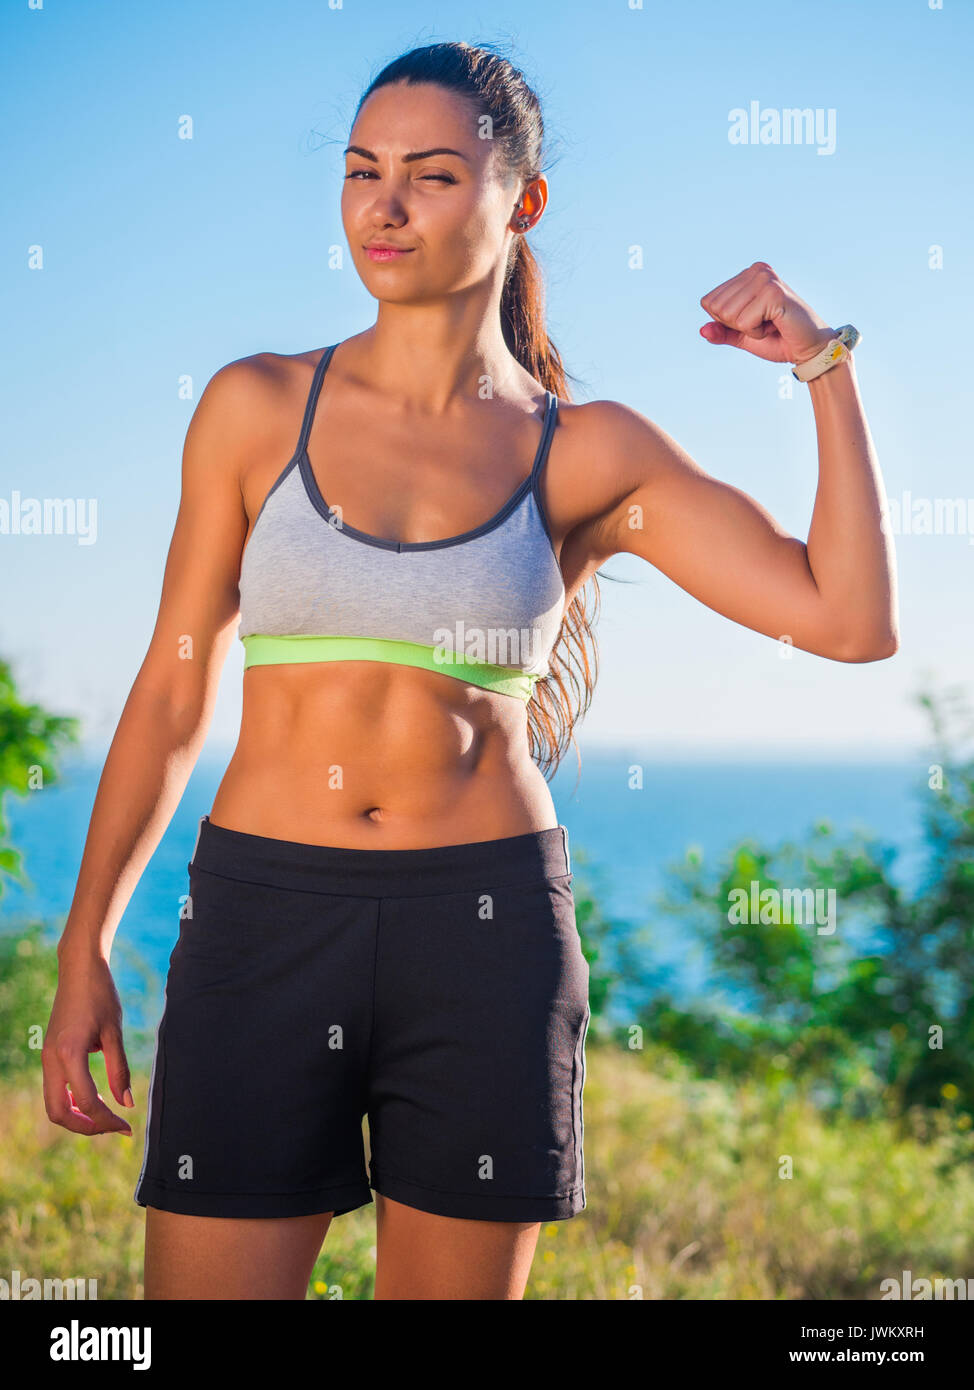 Confident female runner in sports bra and leggings standing on